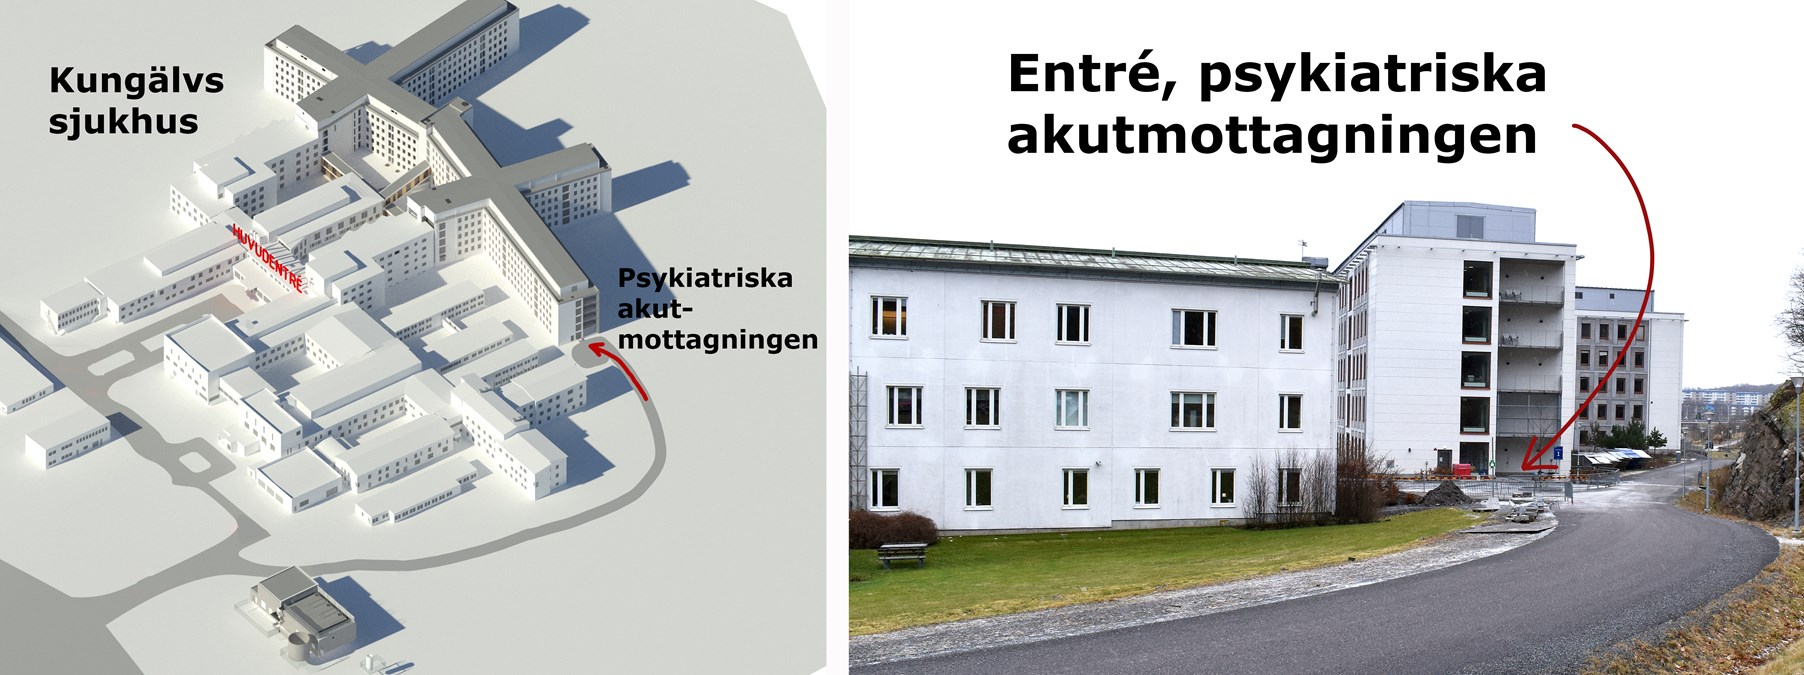 Karta och foto som visar entrén till psykiatriska akutmottagningen på Kungälvs sjukhus